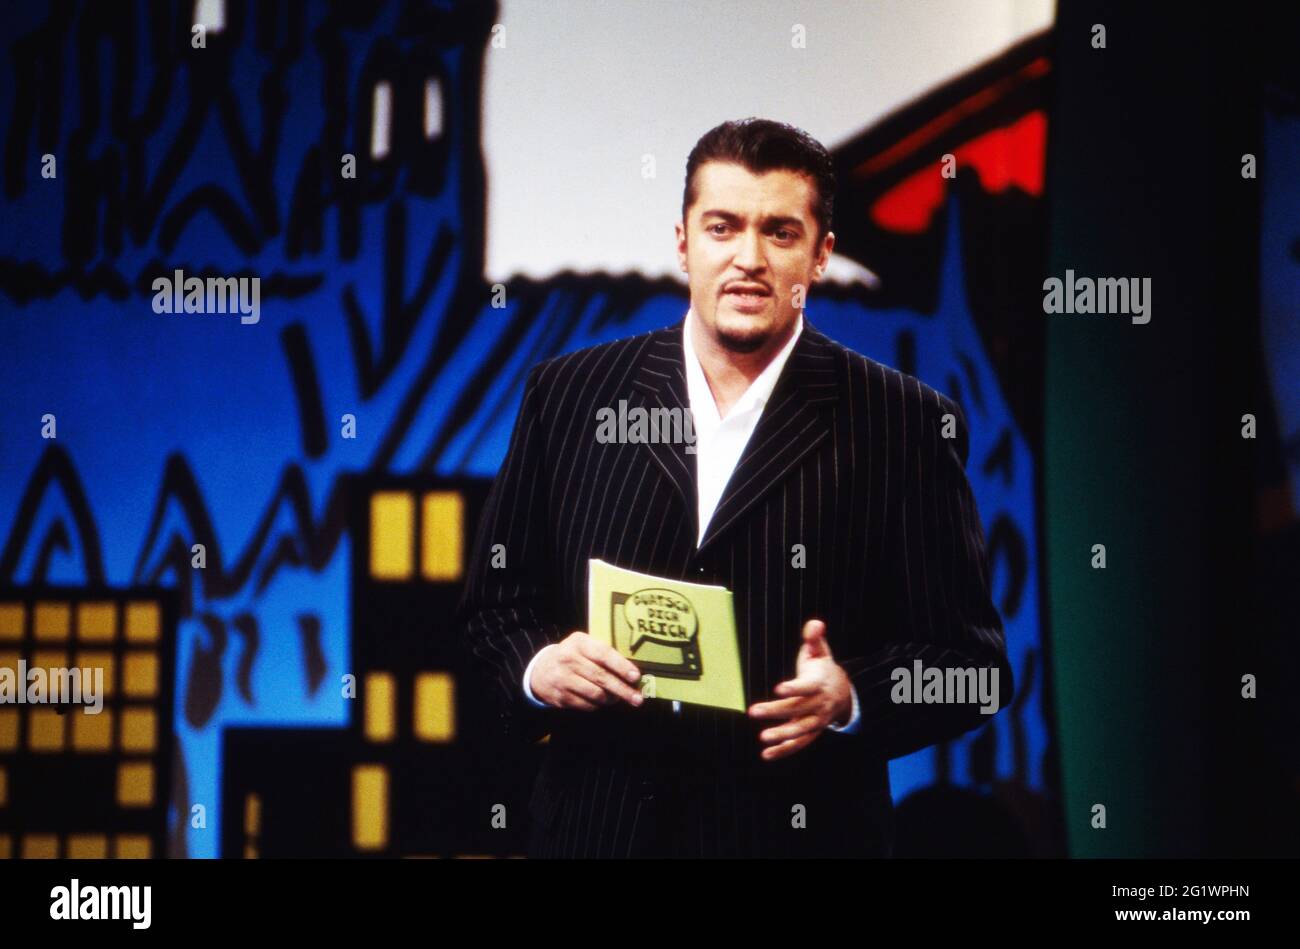 Quatsch dich reich - Koslars Comedy Talk, Talkshowparodie, Deutschland 1999, moderatore: Michael Koslar Foto Stock